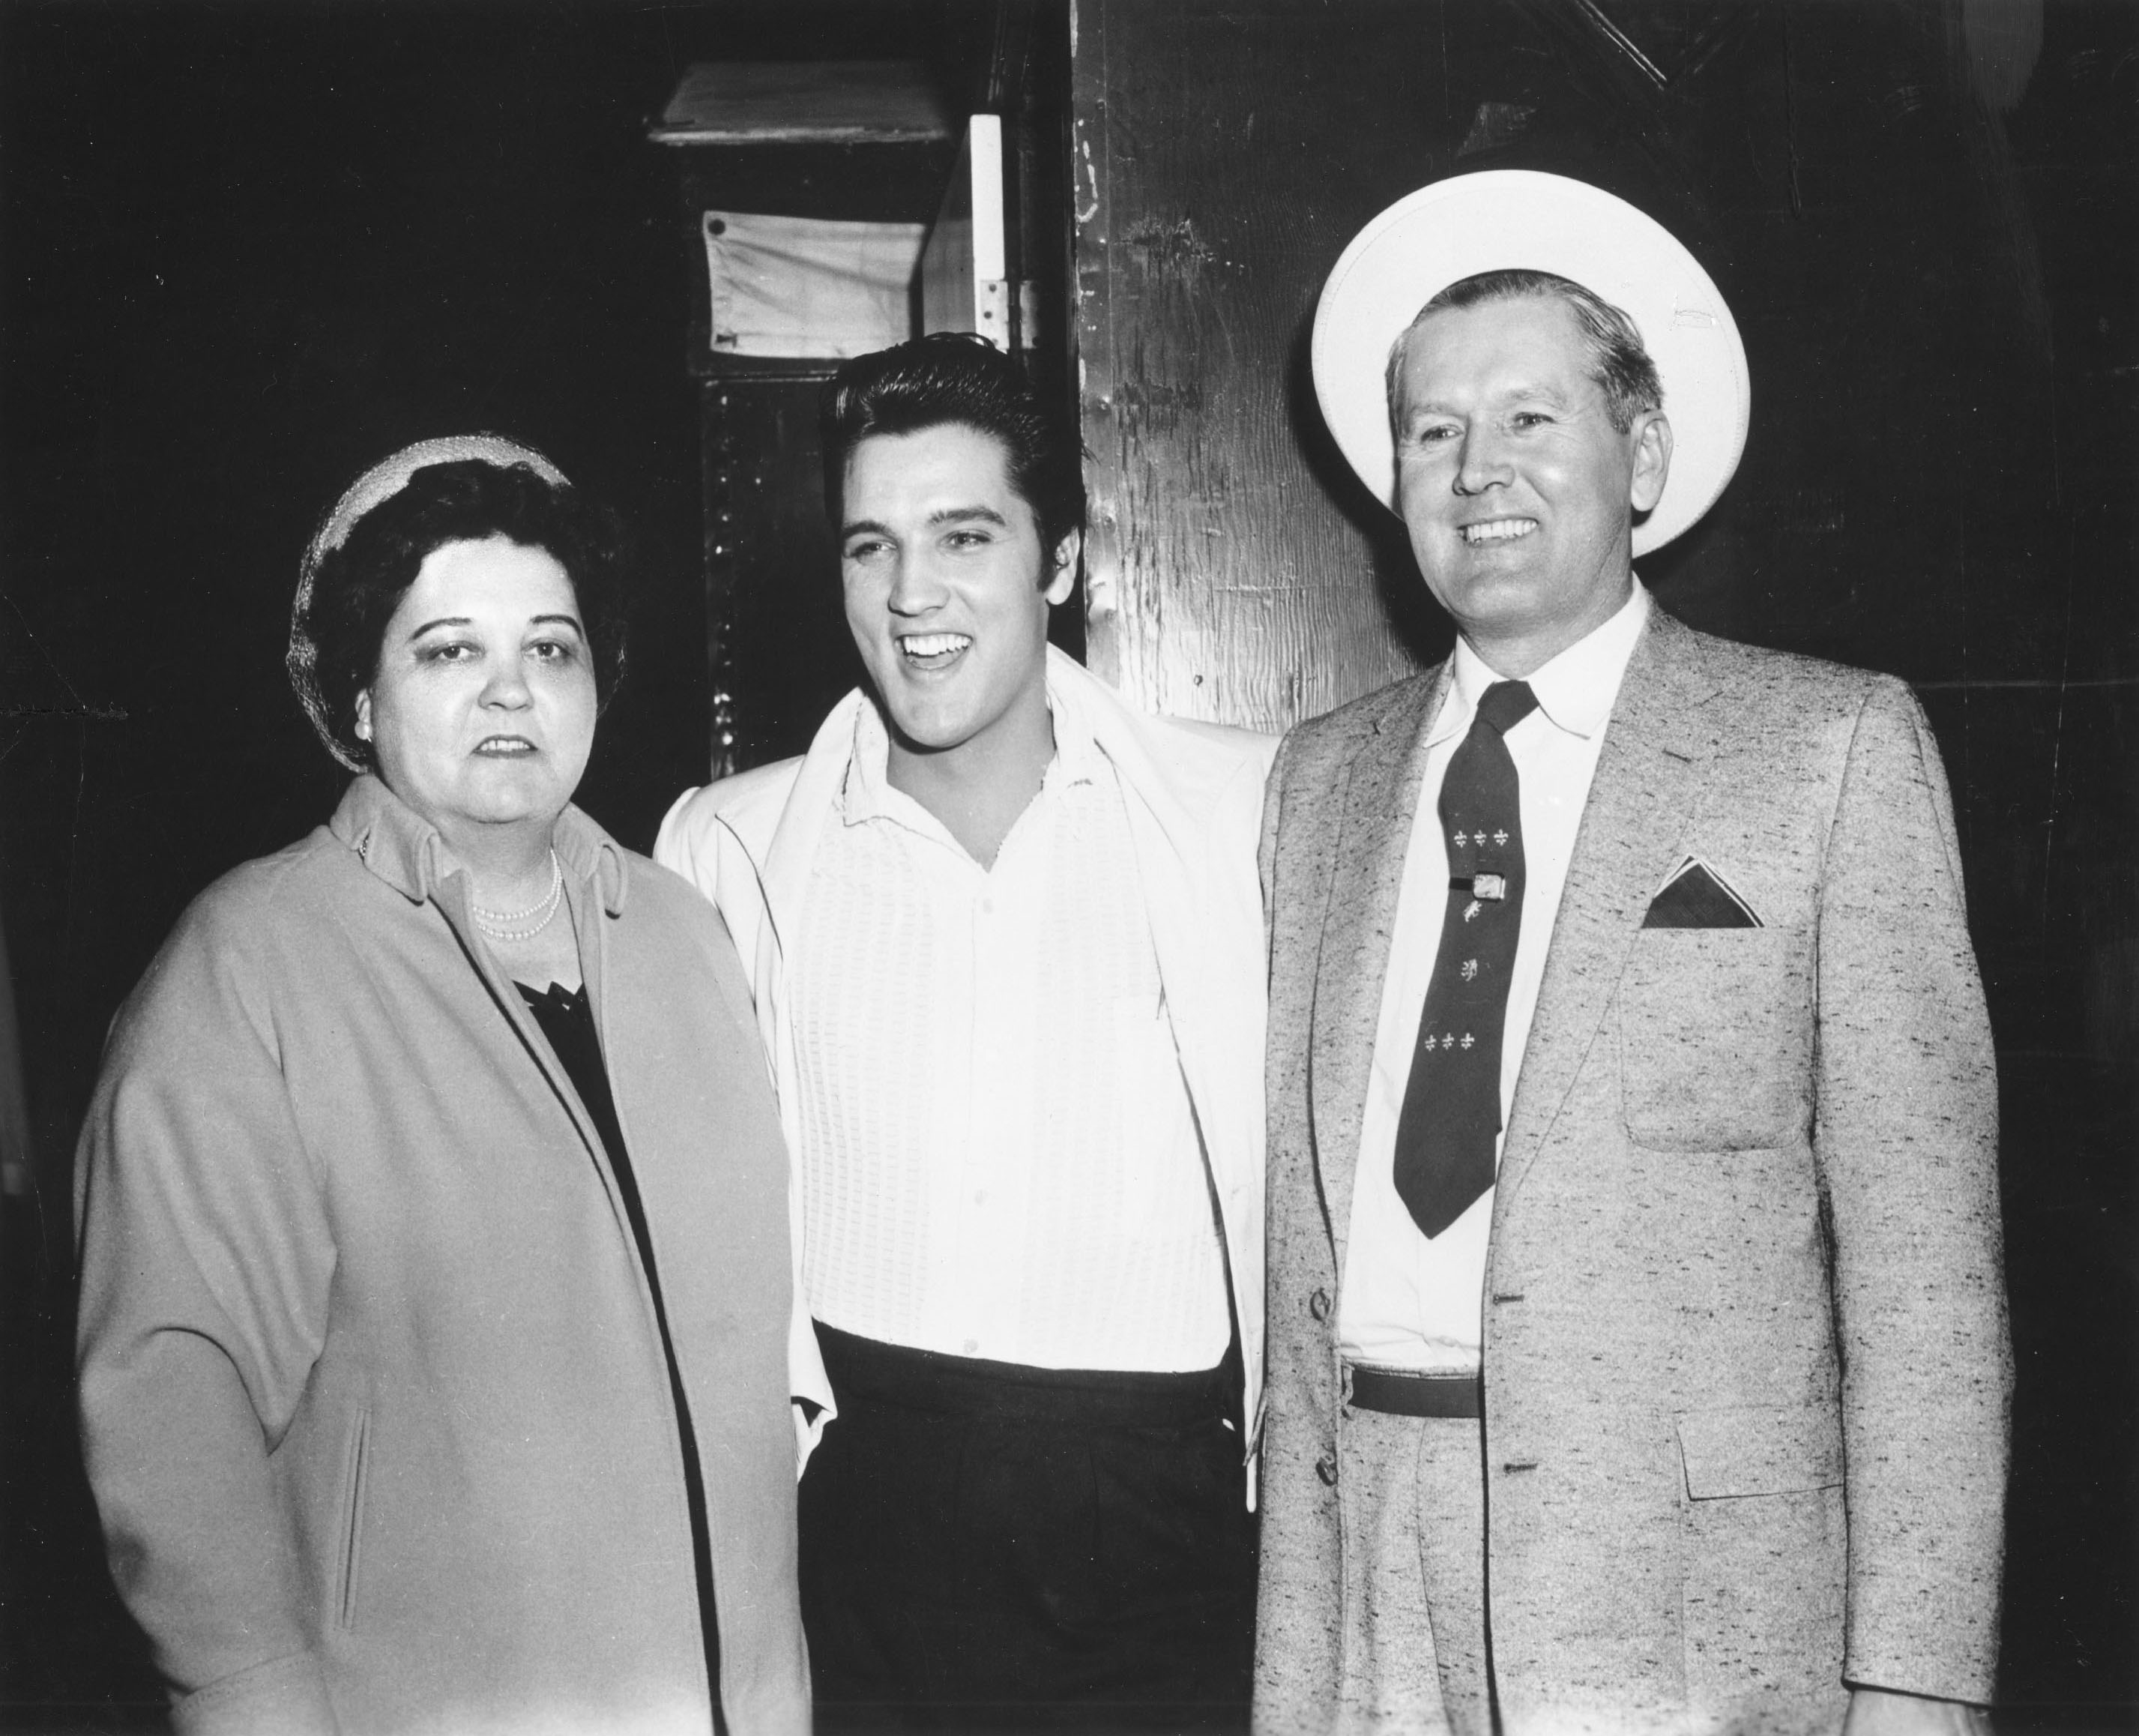 Gladys Presley, Elvis Presley, and Vernon Presley near a wall